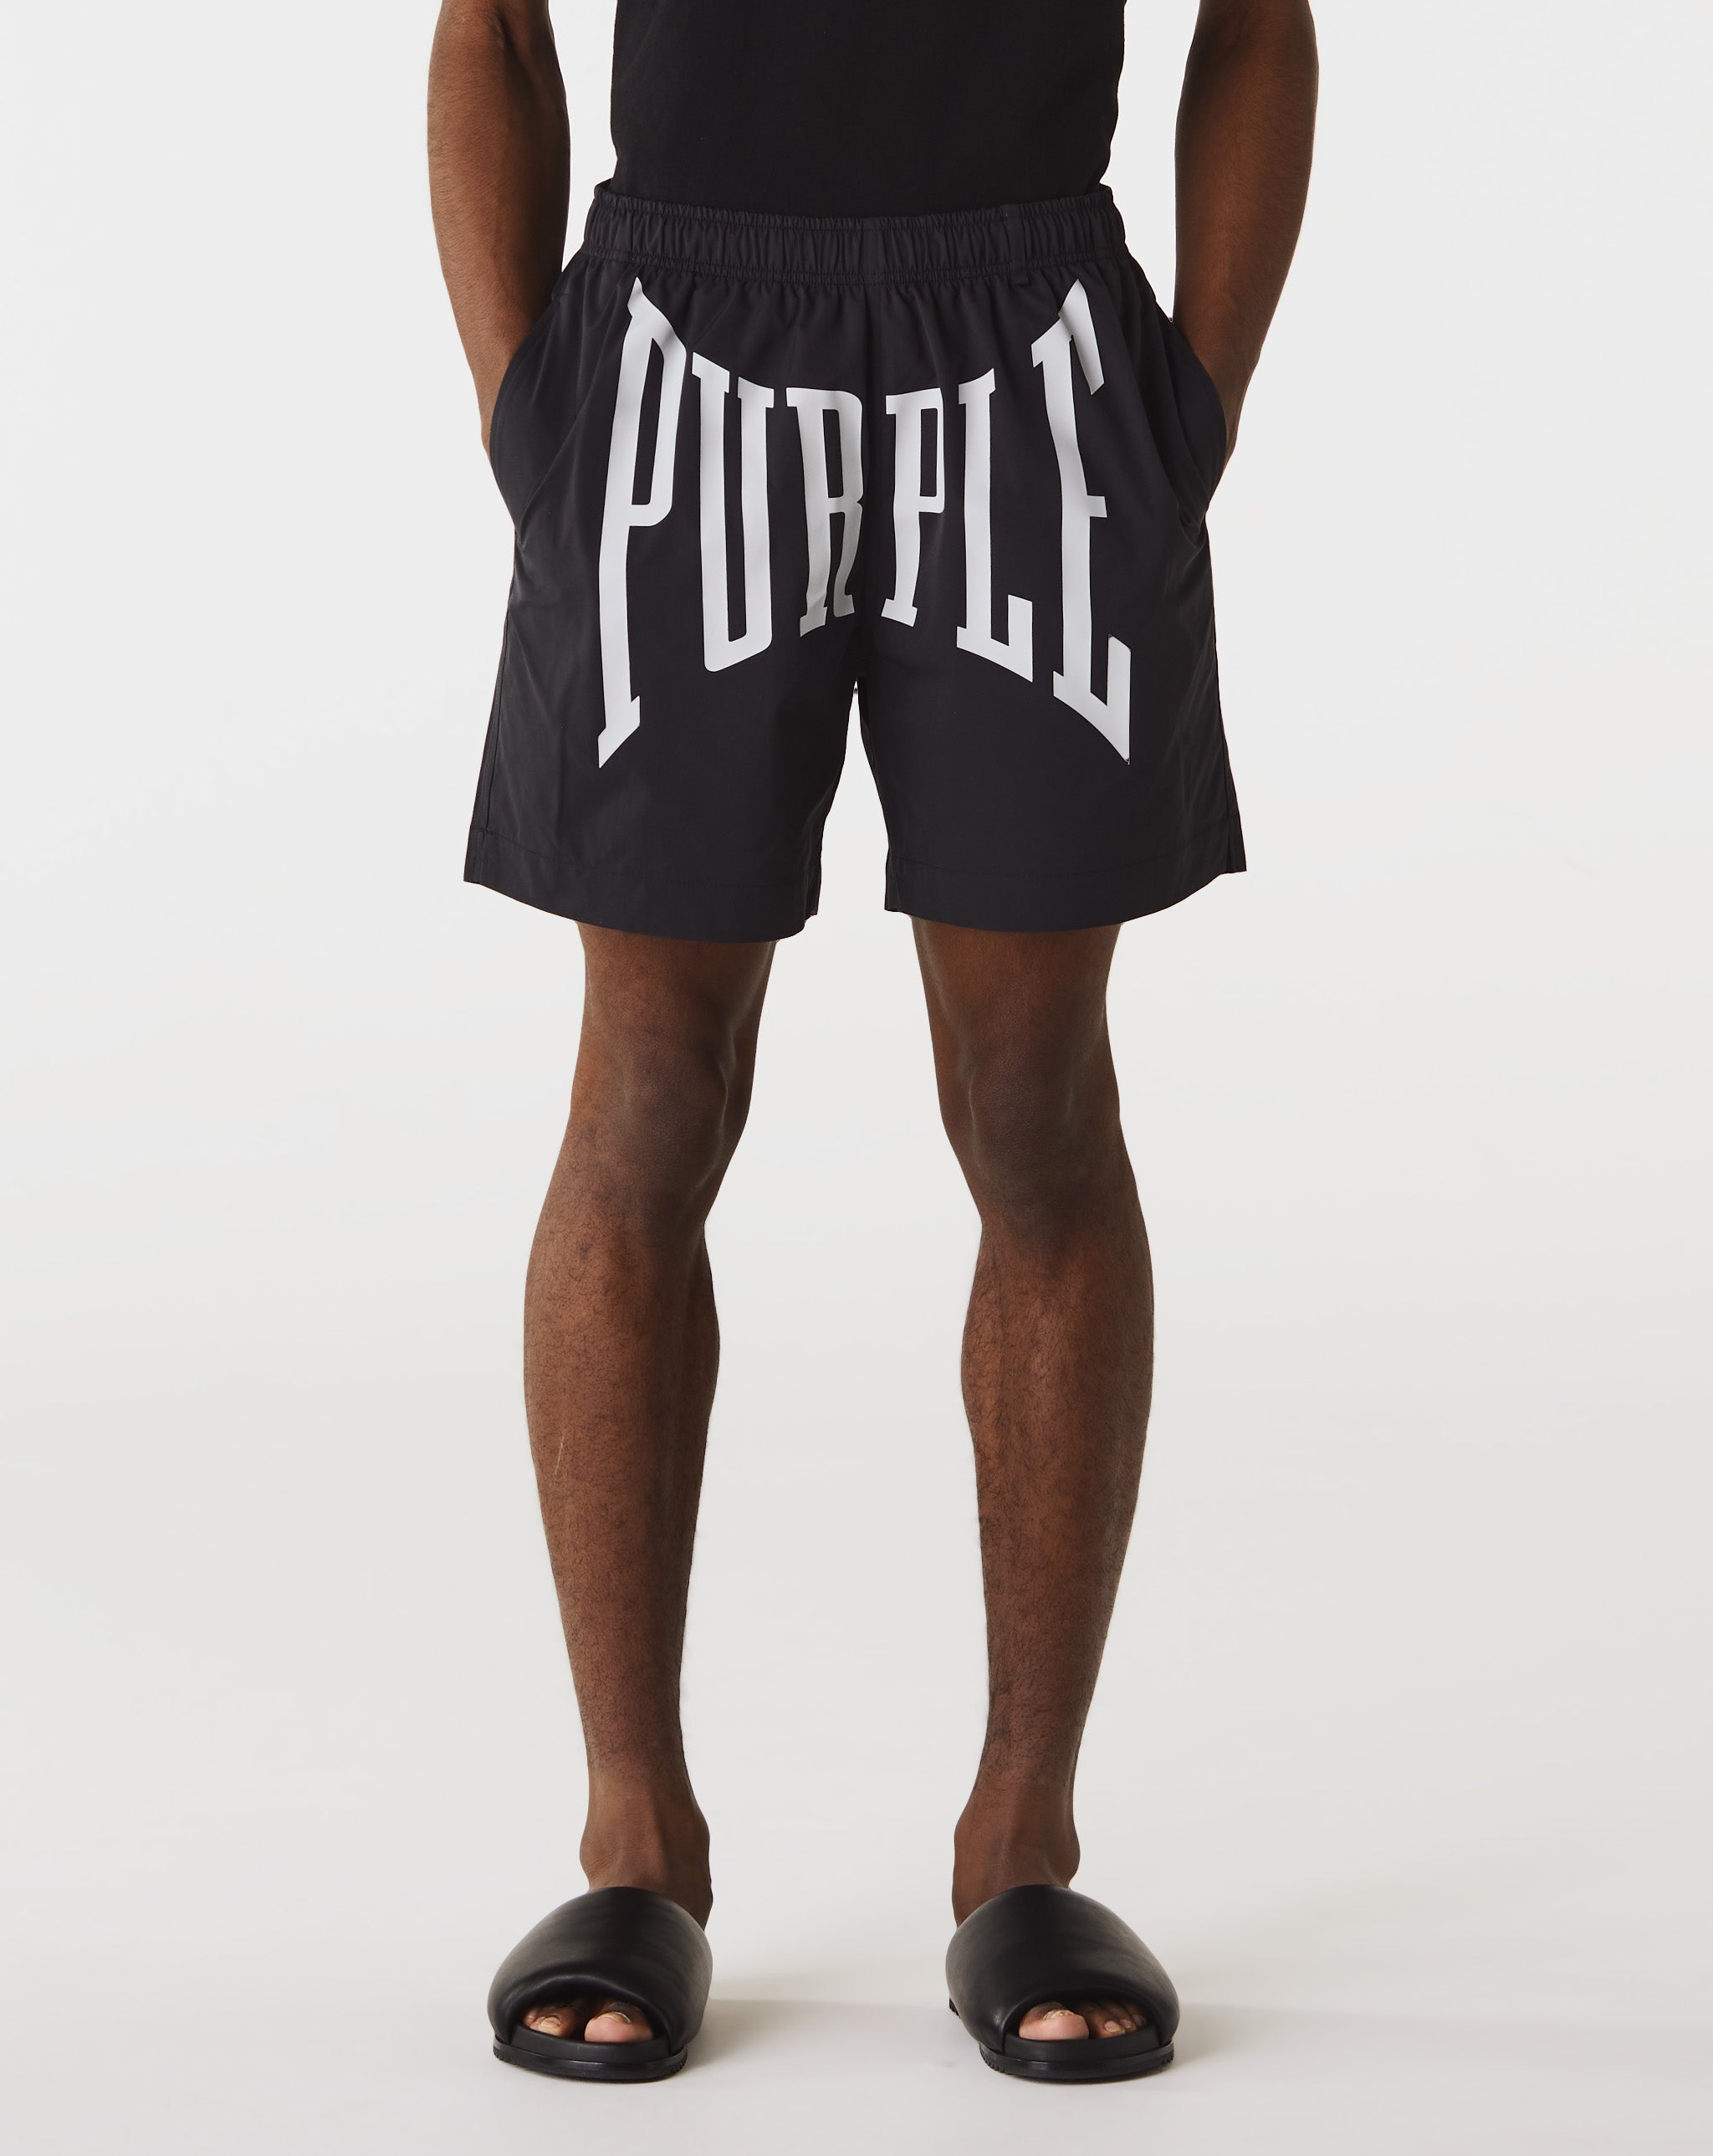 Purple Brand Mesh Sport Shorts  - Cheap Urlfreeze Jordan outlet